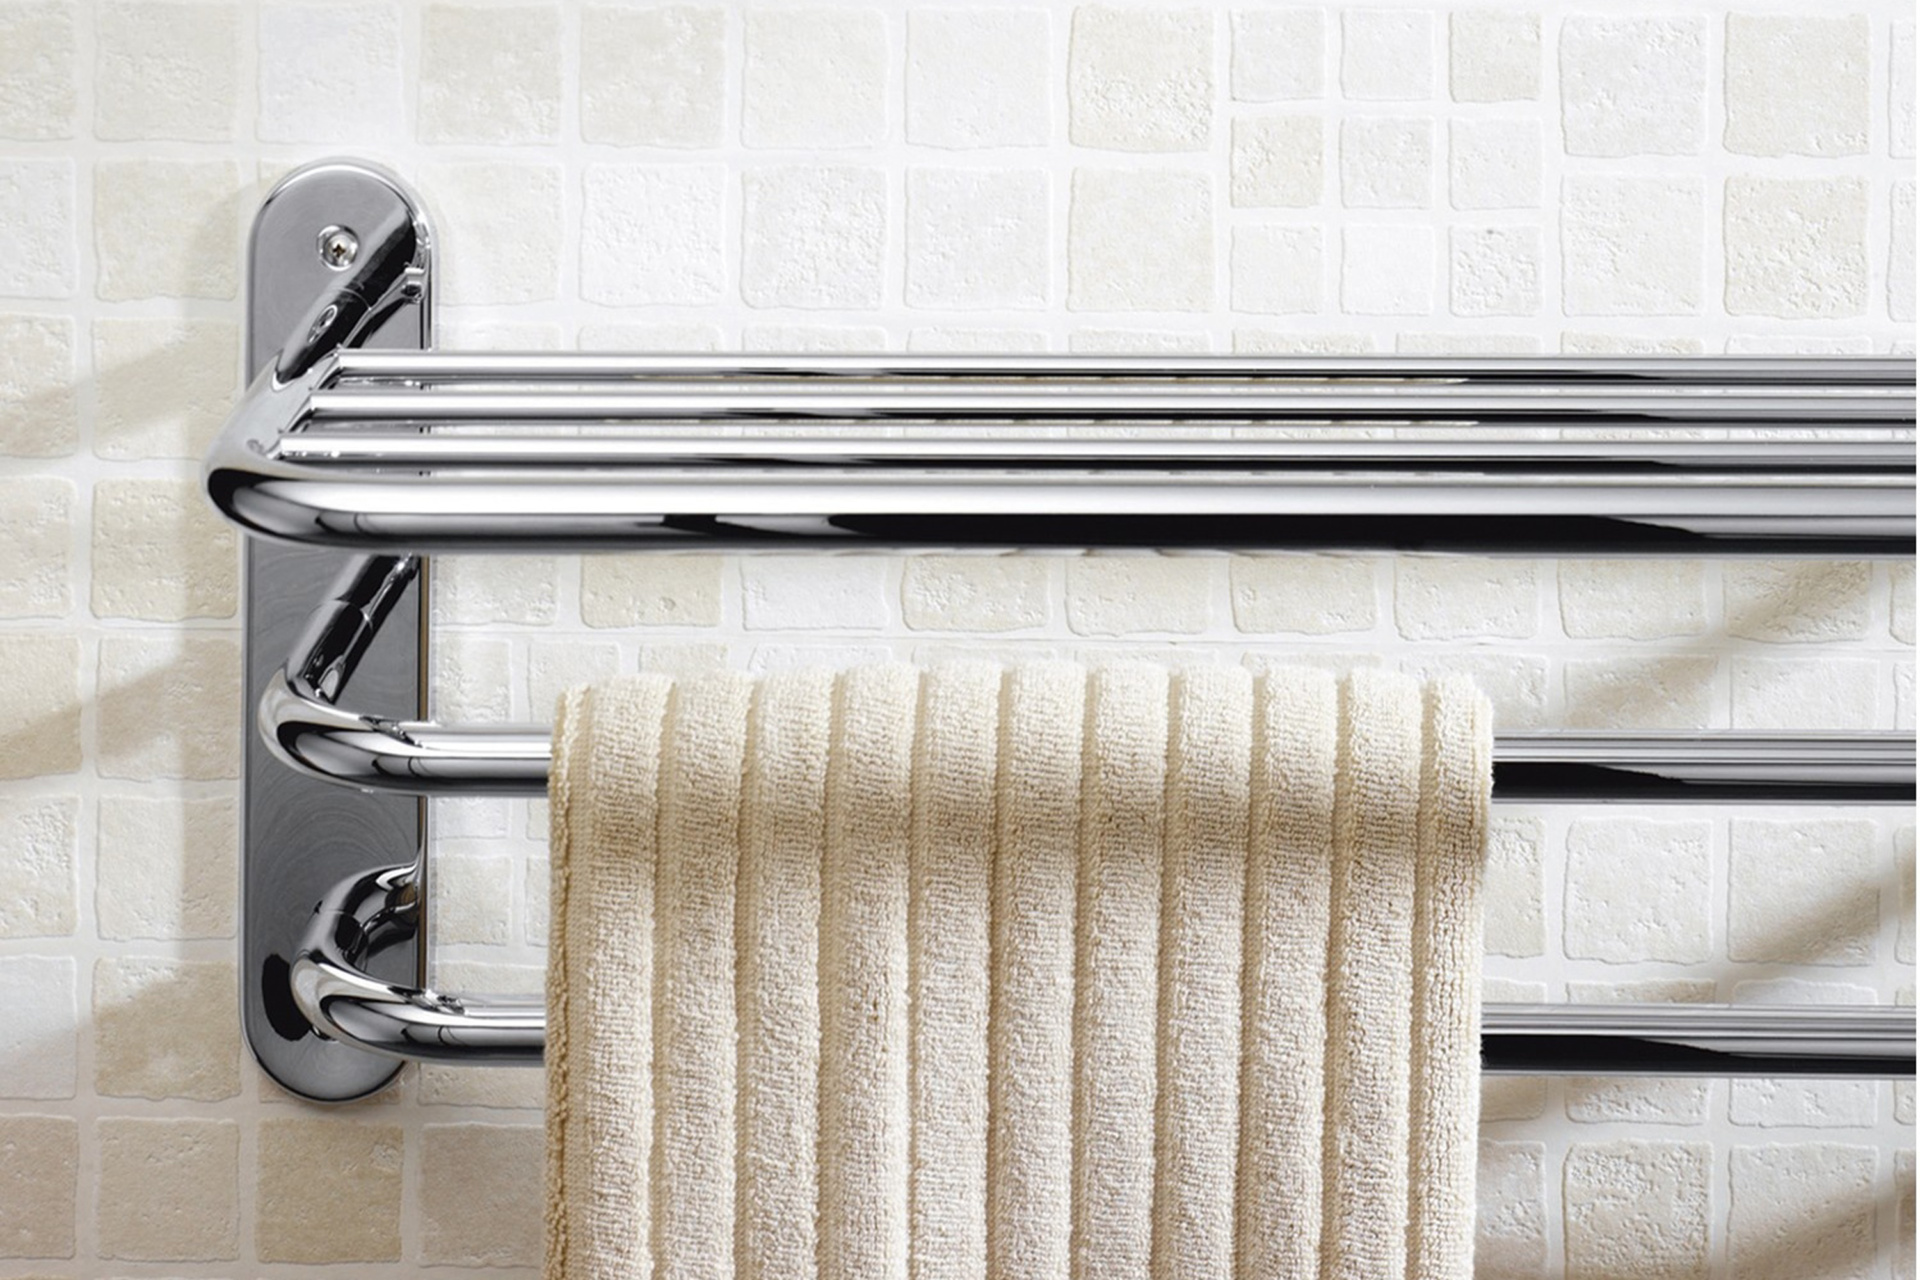 Сушилка для полотенец настенная. YLT 0313а сушилка Towel Rack. Сушилка для белья Stainless Steel Towel Rack. Полотенце сушилка для ванны. Держатель для полотенец в ванну.